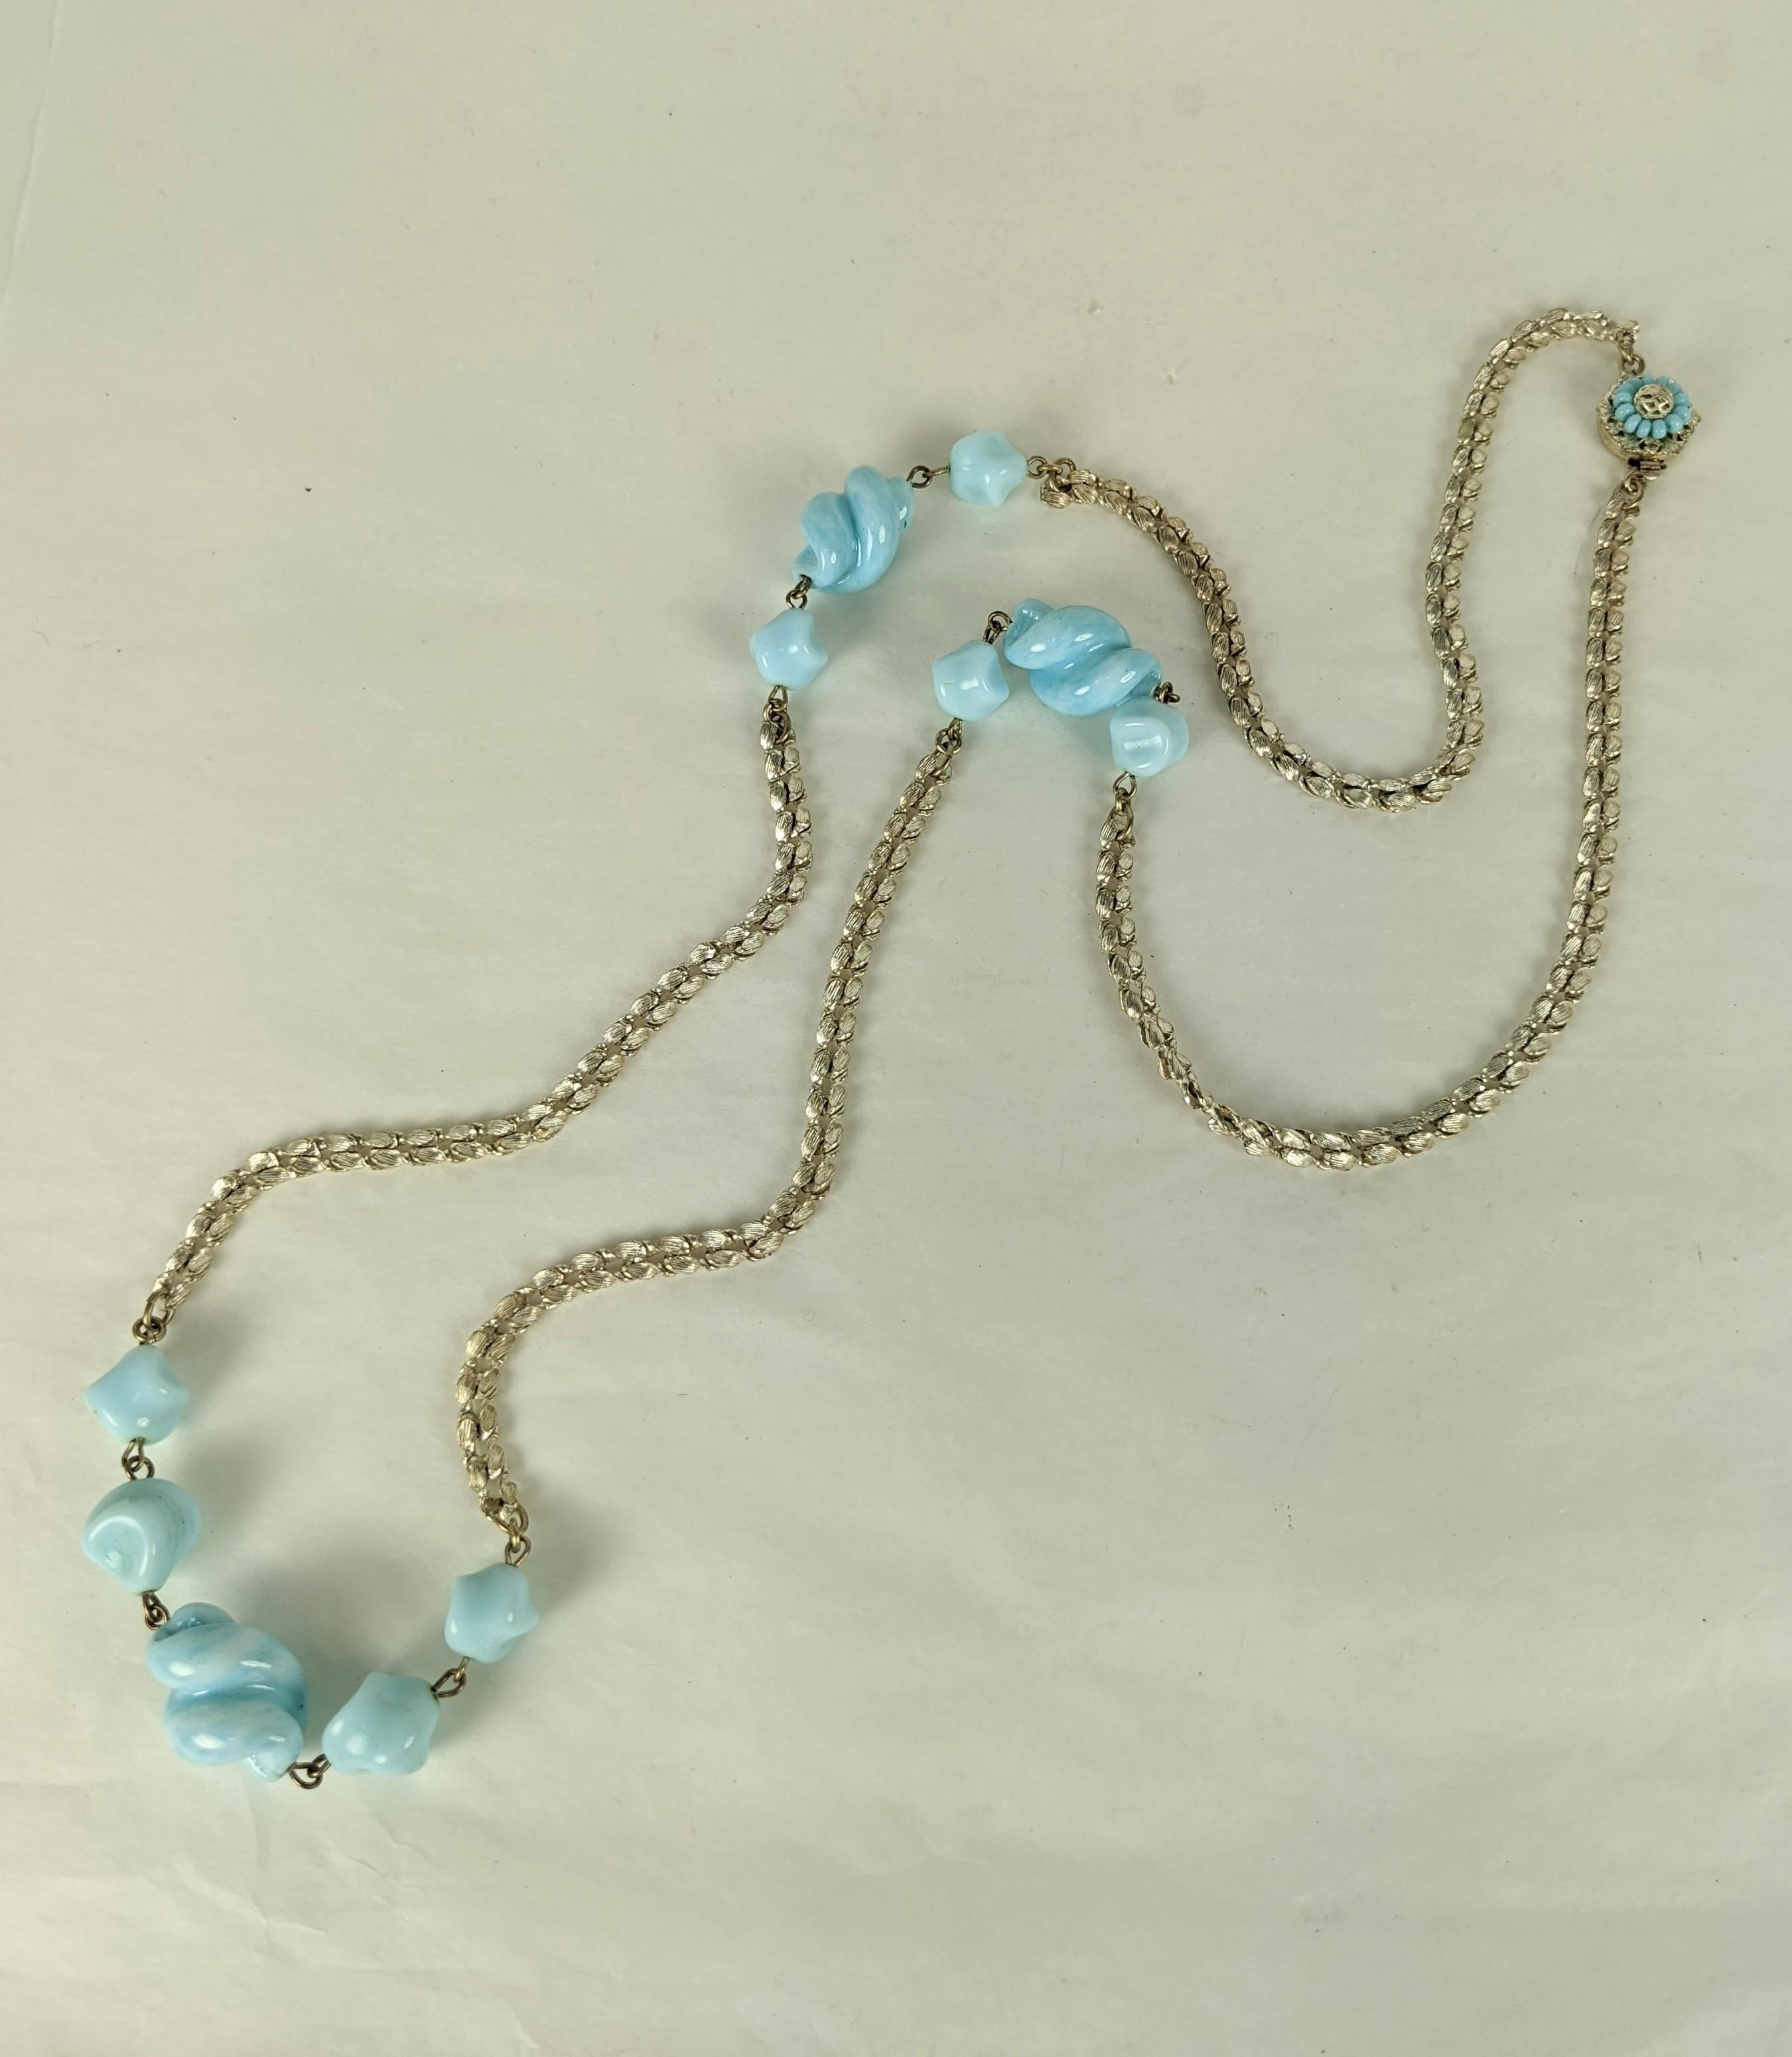 Miriam Haskell pâle turquoise bleu pate de verre fait à la main sautoir de perles de liège à vis. La chaîne tissée texturée de l'argenterie. Fermoir hexagonal signé Miriam Haskell, composé de perles de rocaille turquoise cousues à la main et de